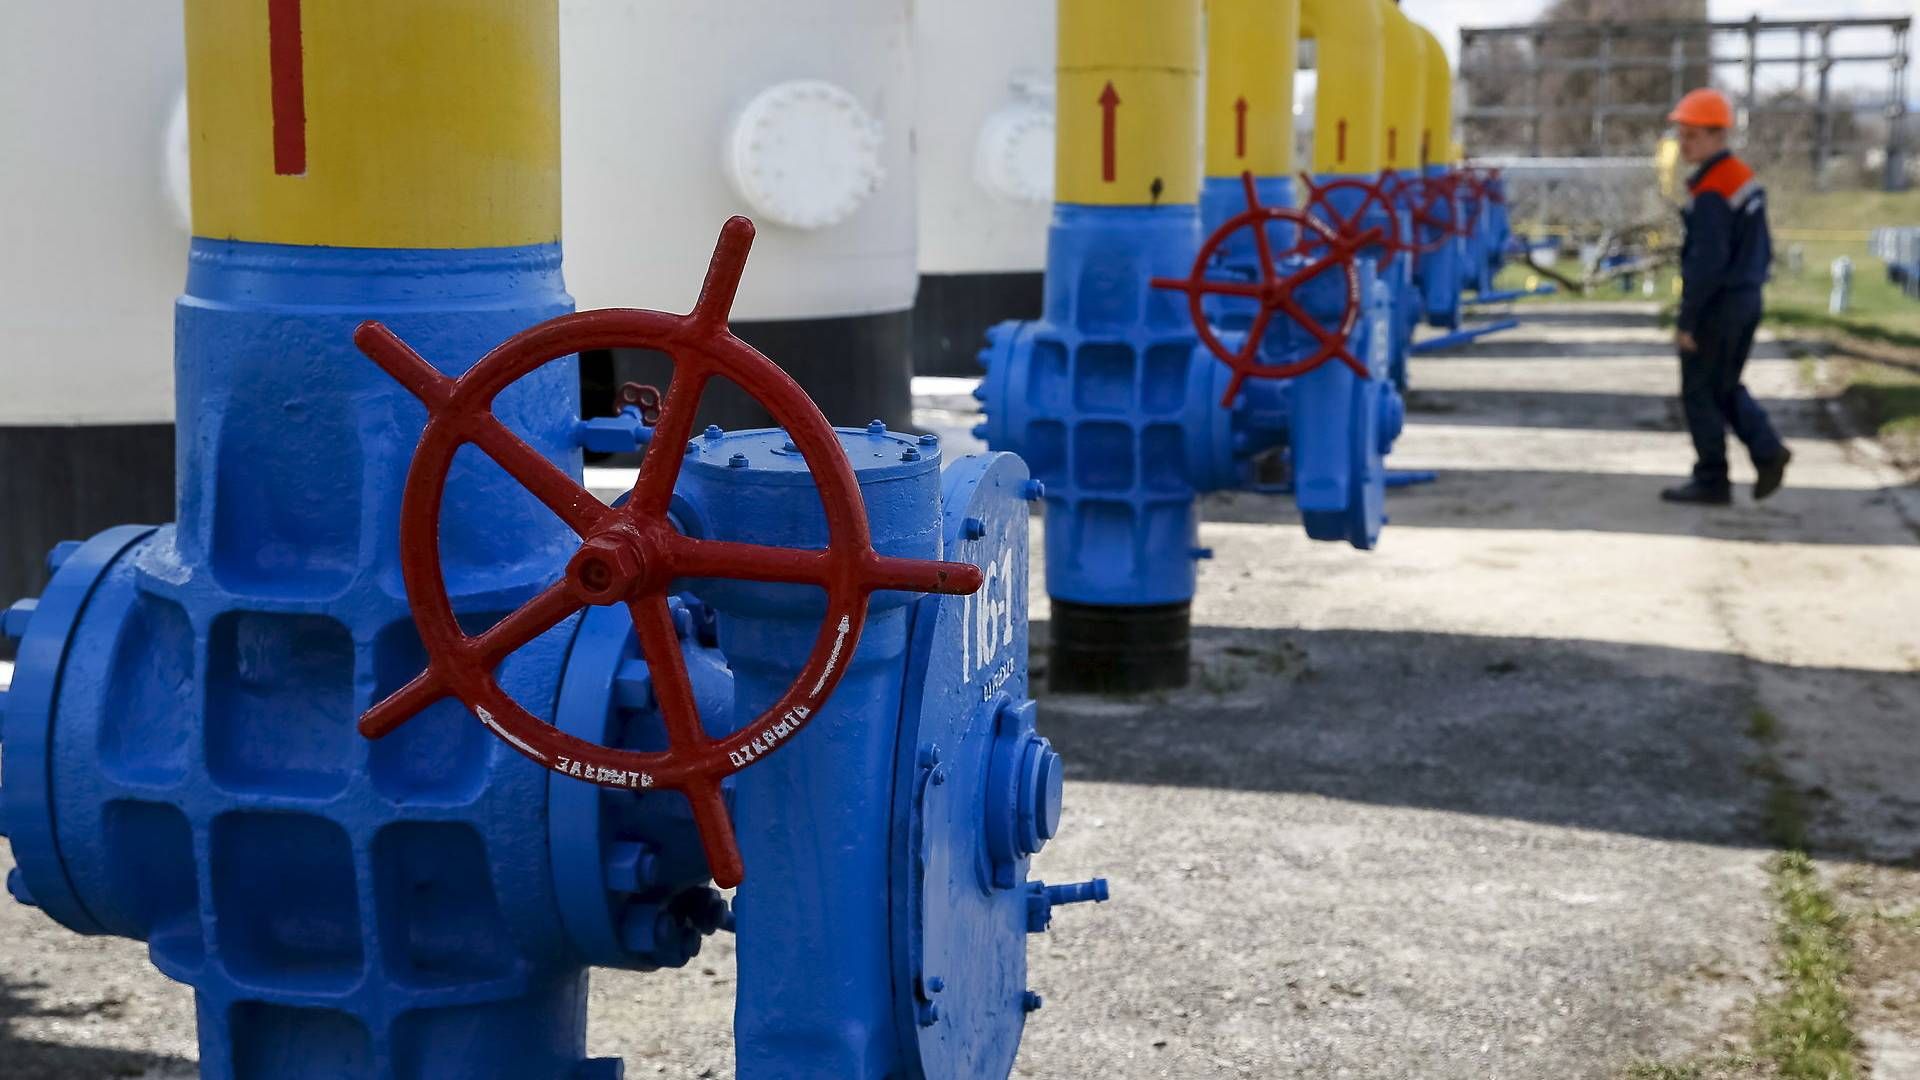 Rusland vil benytte gasledningen Nord Stream 2 som et "geopolitisk våben". Det mener Jurij Vitrenko, der er øverste chef for Naftogaz - Ukraines statslige energiselskab. | Foto: Gleb Garanich/Reuters/Ritzau Scanpix